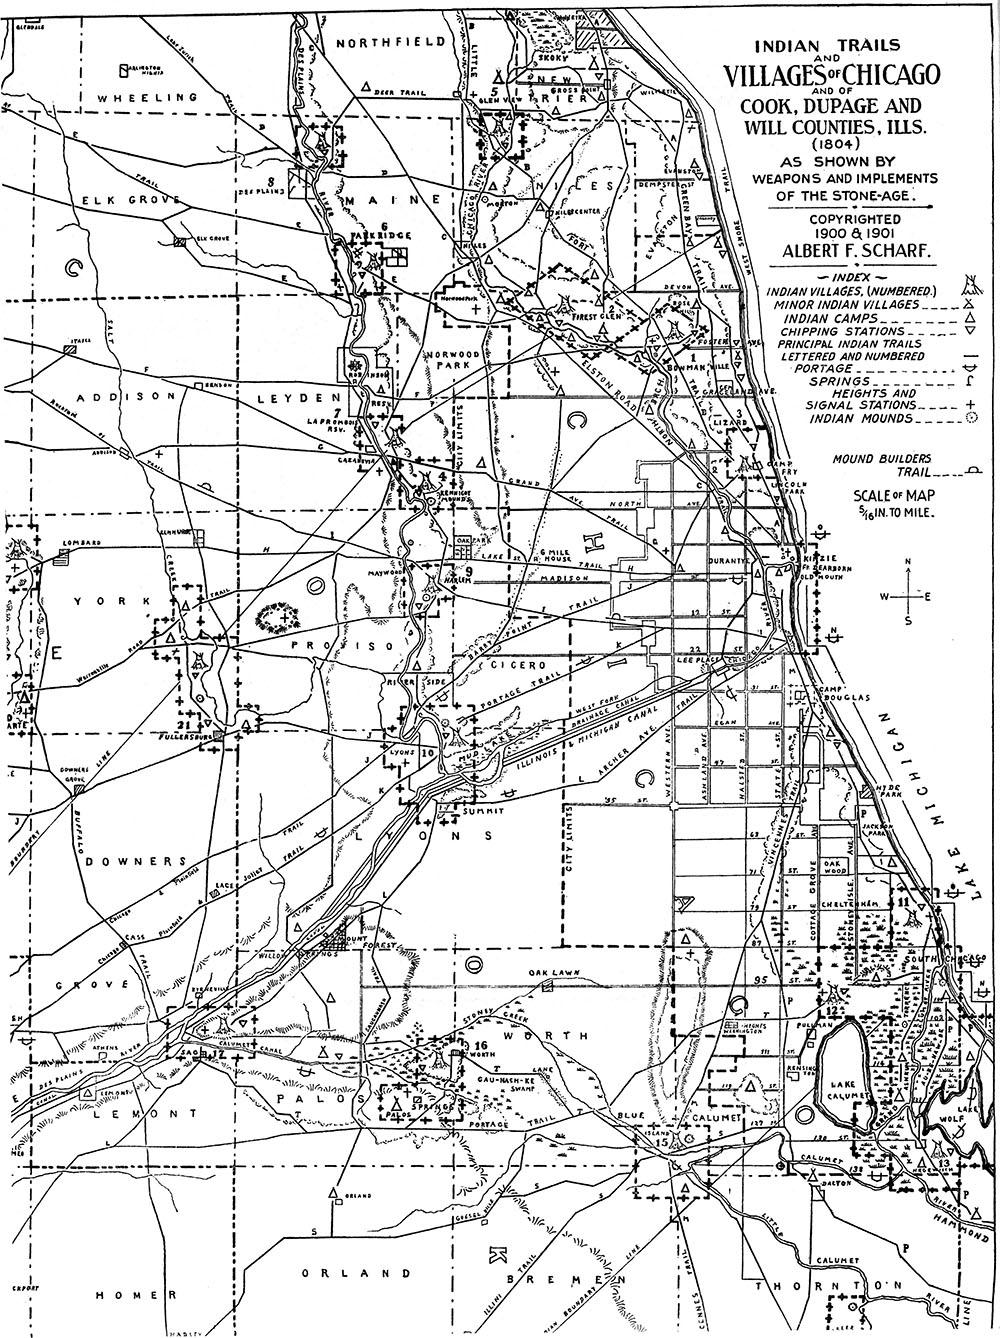 Albert Scharf's map